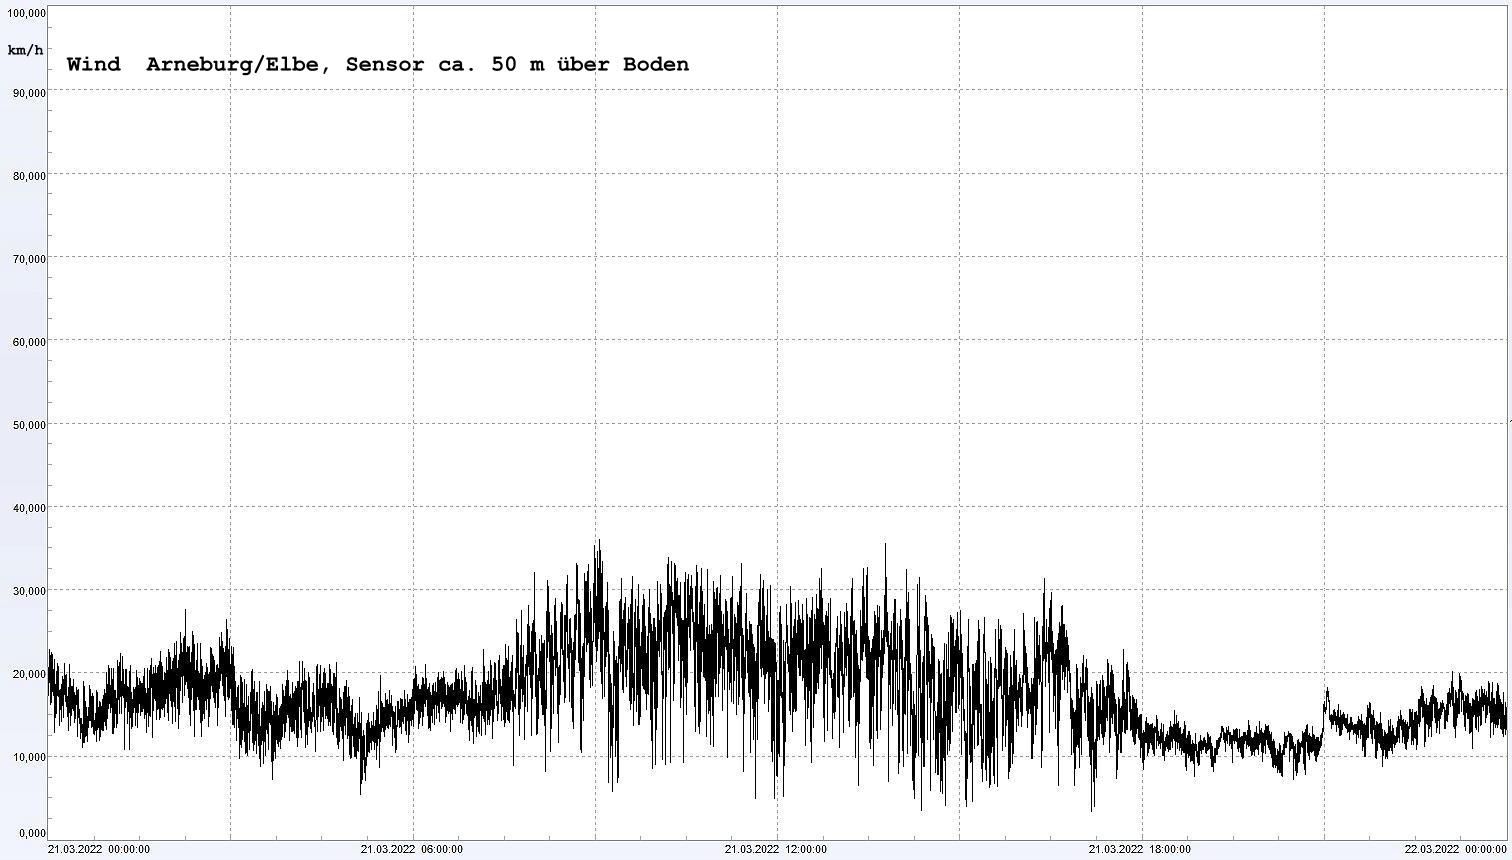 Arneburg Winddaten 21.03.2022, 
  Sensor auf Gebude, ca. 50 m ber Erdboden, 5s-Aufzeichnung